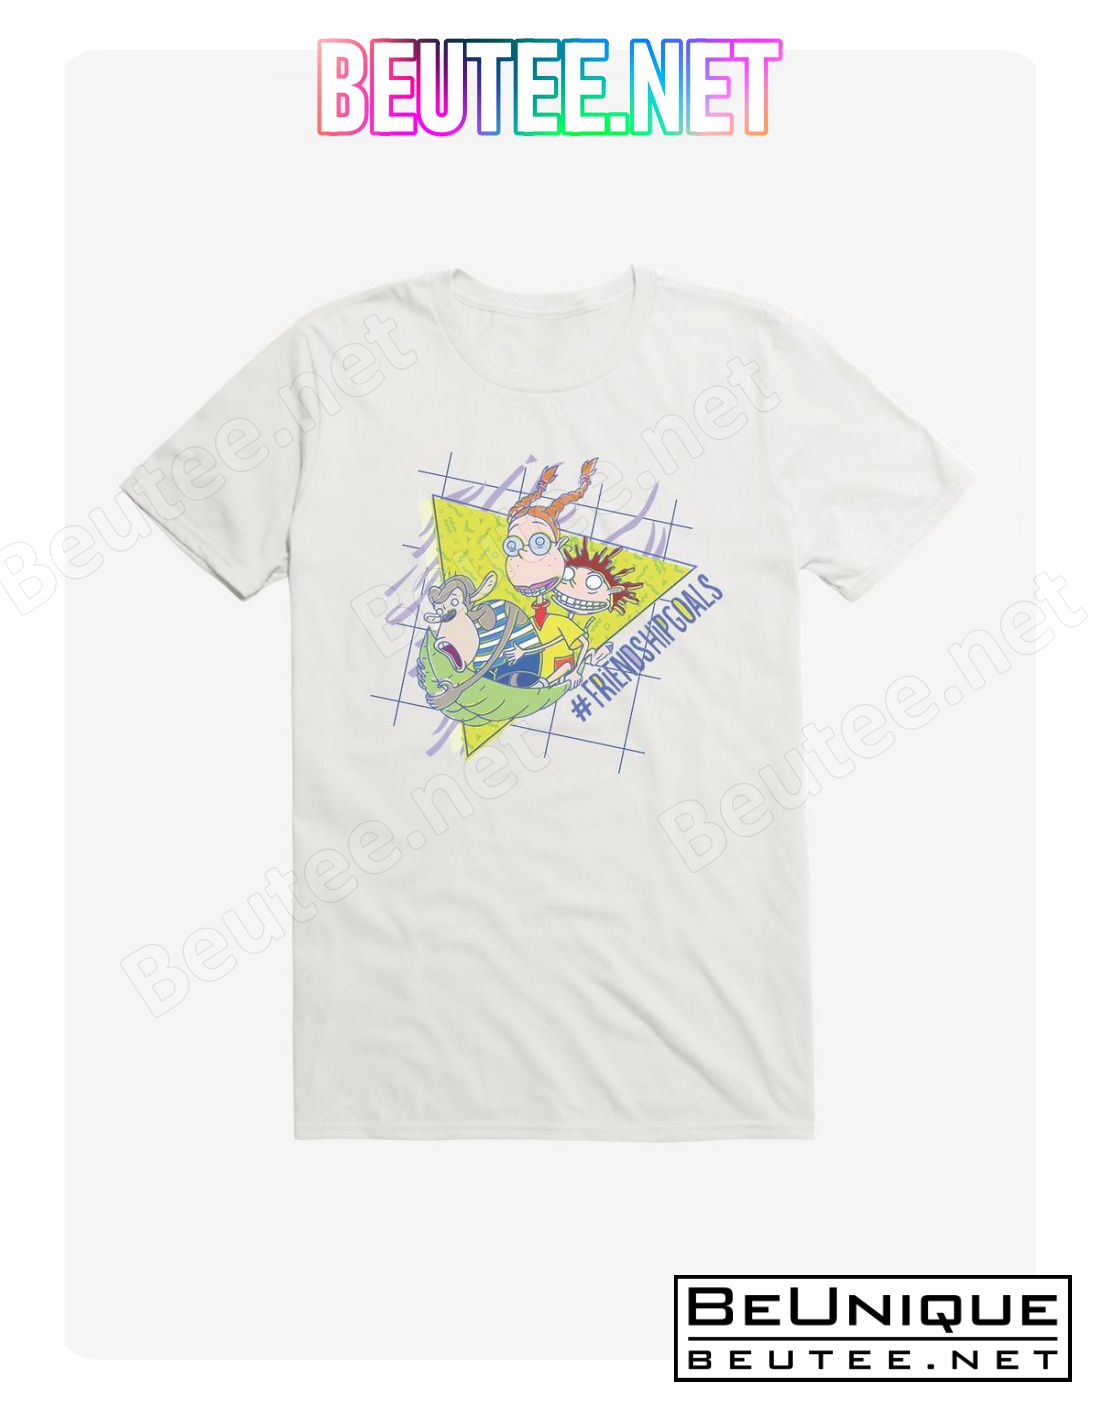 Wild Thornberrys Friendship Goals T-Shirt